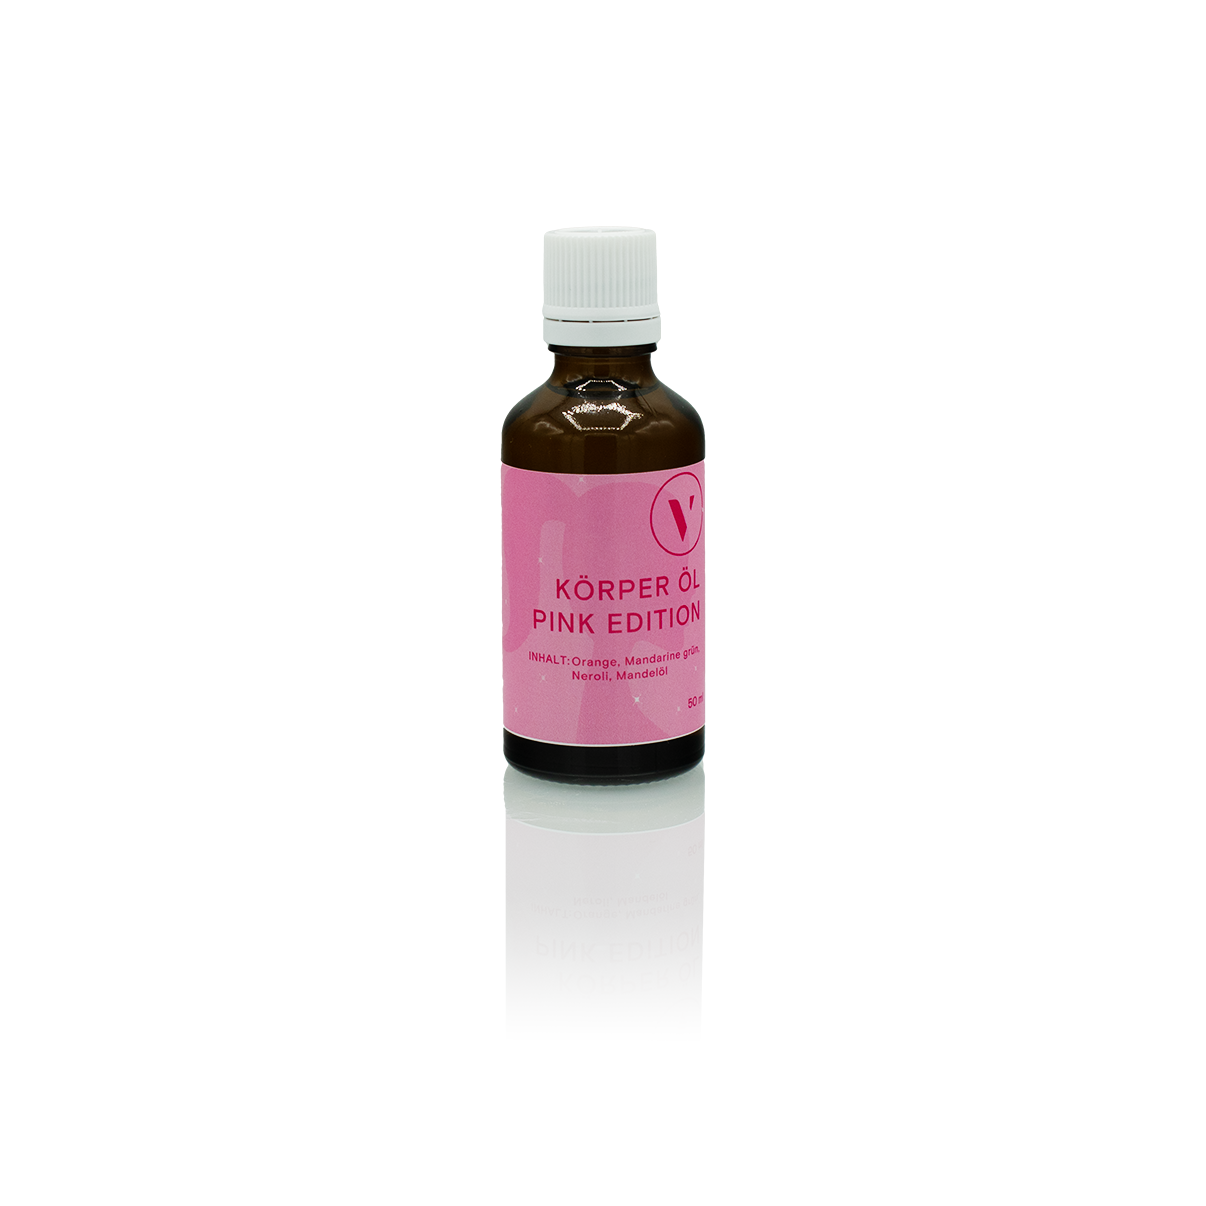 Dunkelbraune, durchsichtige Glasflasche mit weißer Verschlusskappe und rosa Etikett des pflegenden Körperöls.